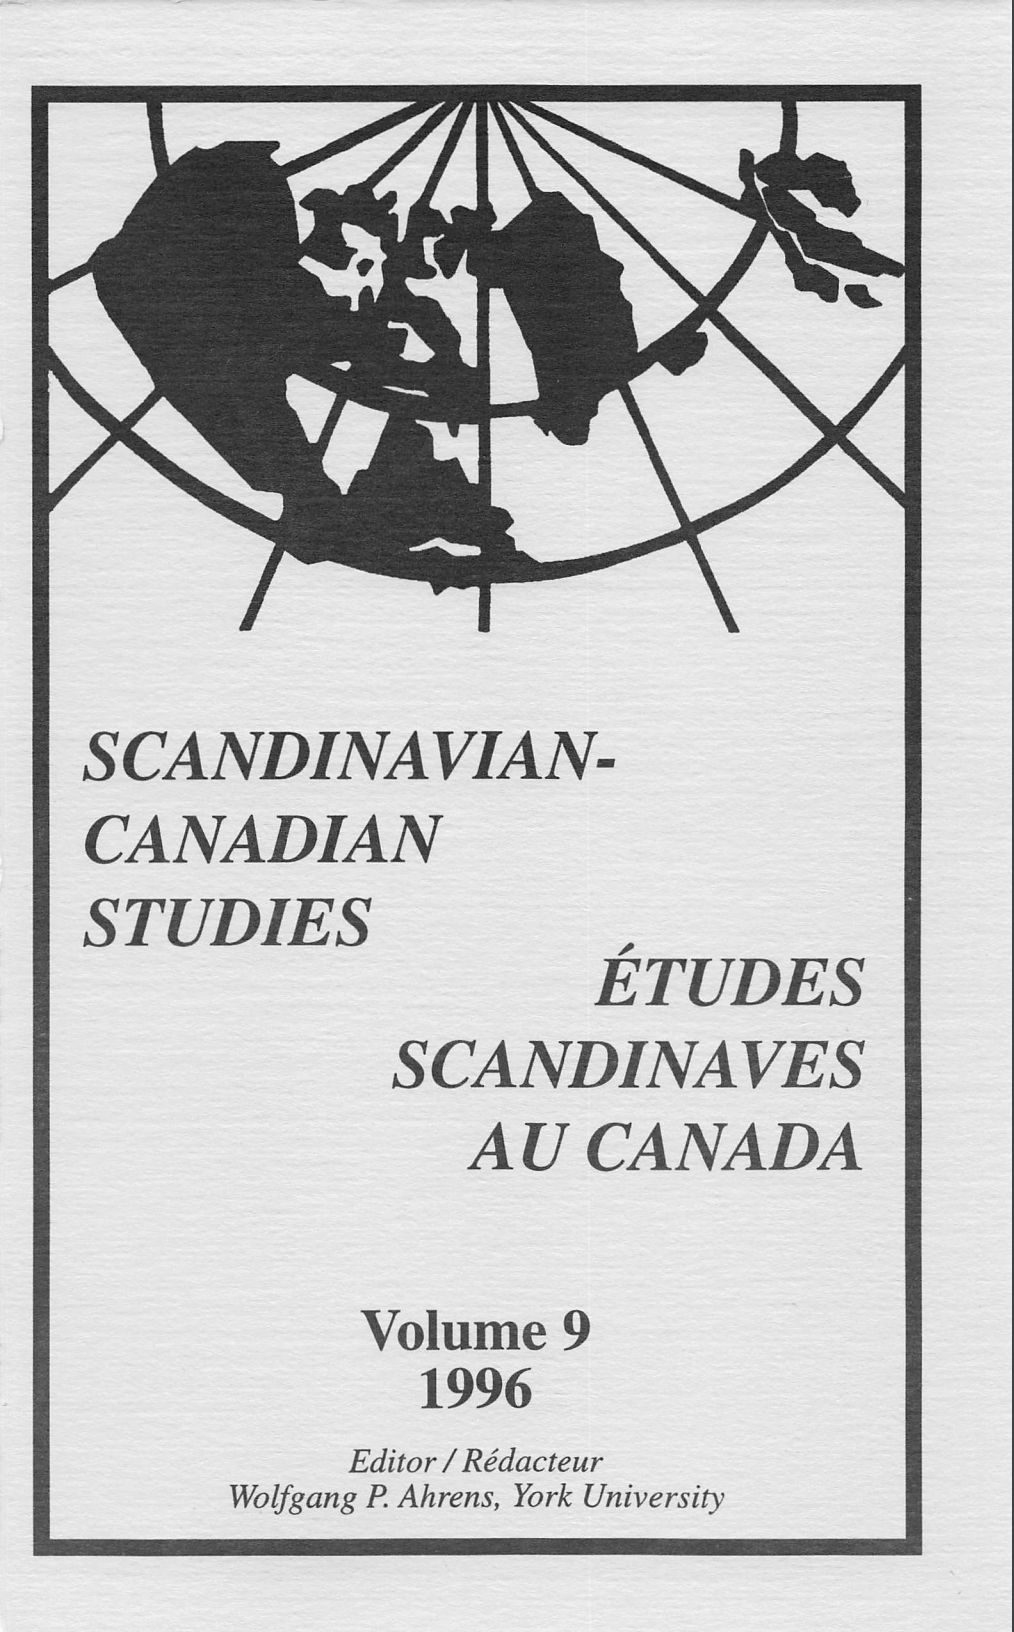 					View Vol. 9 (1996): SCANDINAVIAN-CANADIAN STUDIES/ÉTUDES SCANDINAVES AU CANADA Vol. 9 (1996)
				